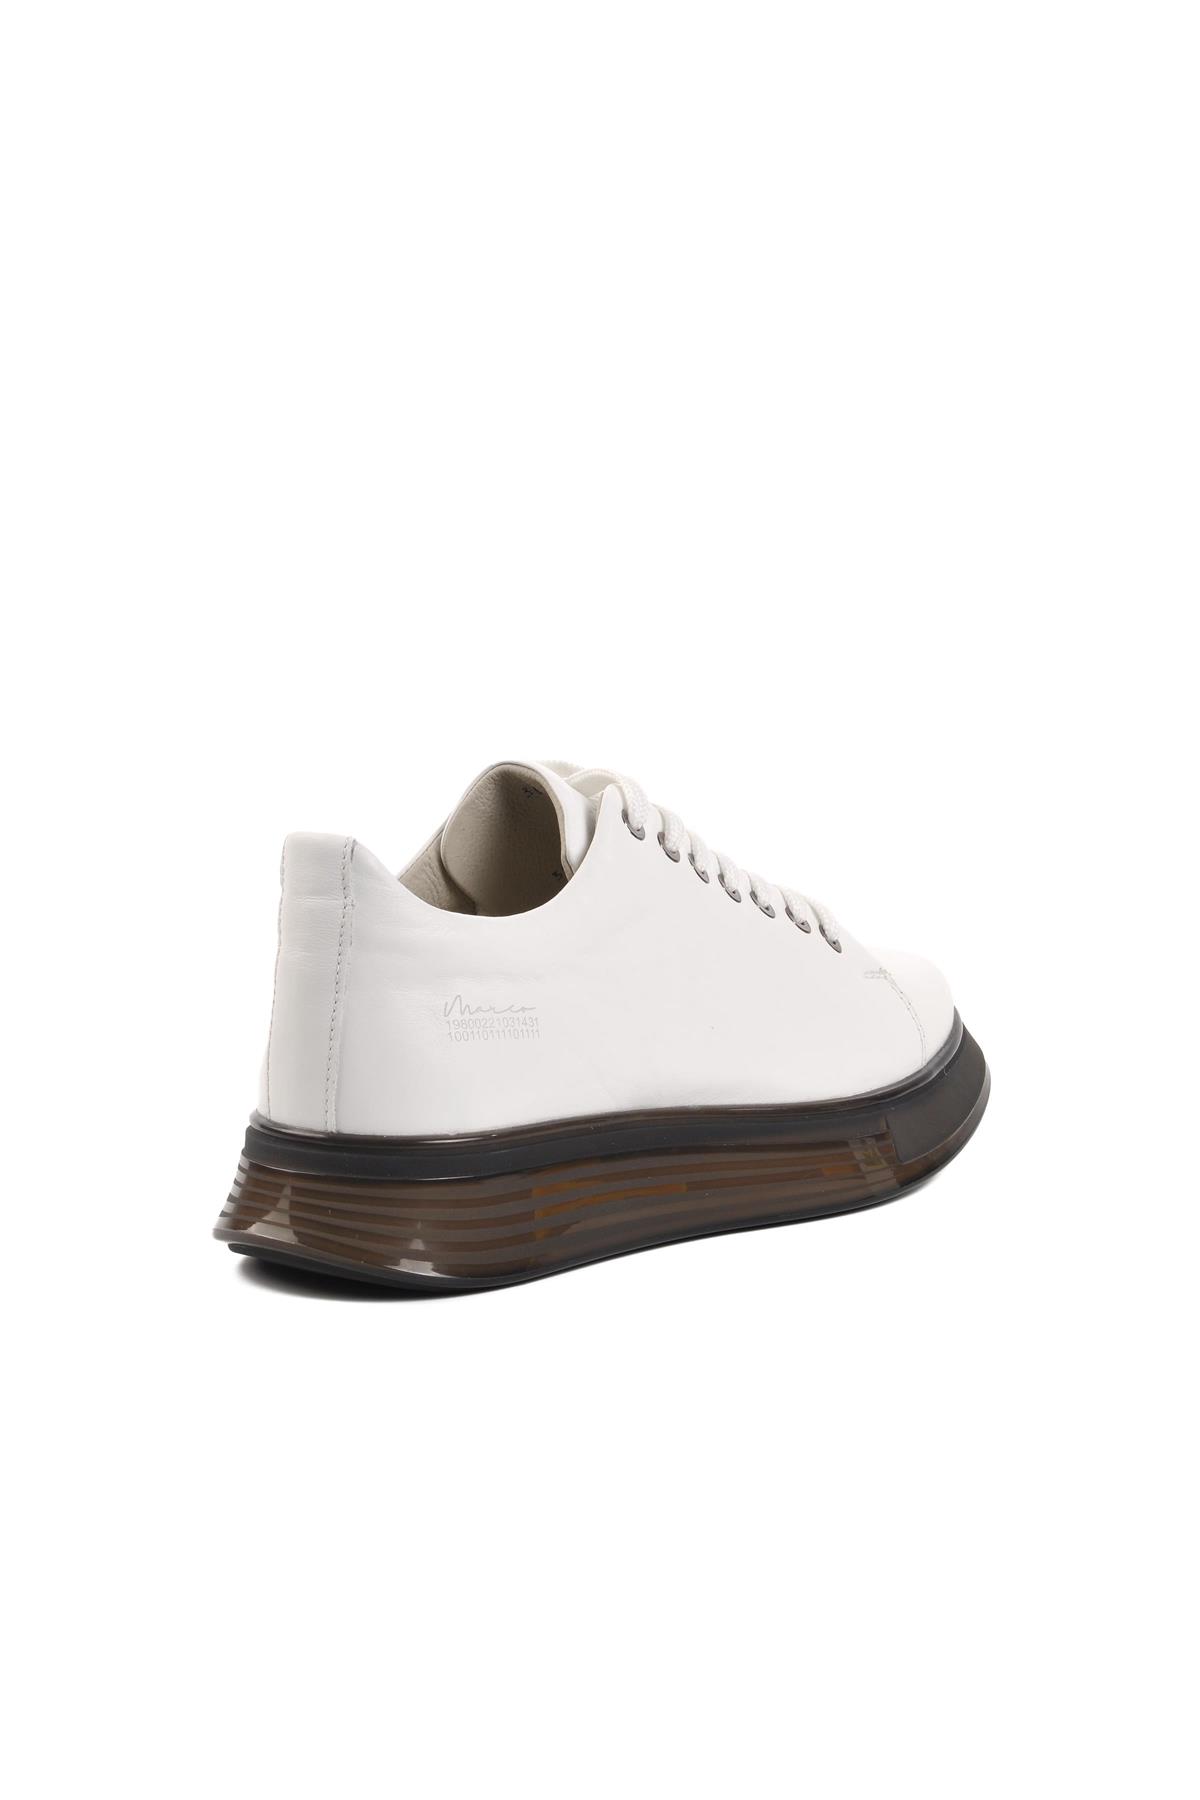 Marcomen 152-15275 Beyaz Hakiki Deri Erkek Casual Ayakkabı MARCOMEN Erkek Günlük Ayakkabı